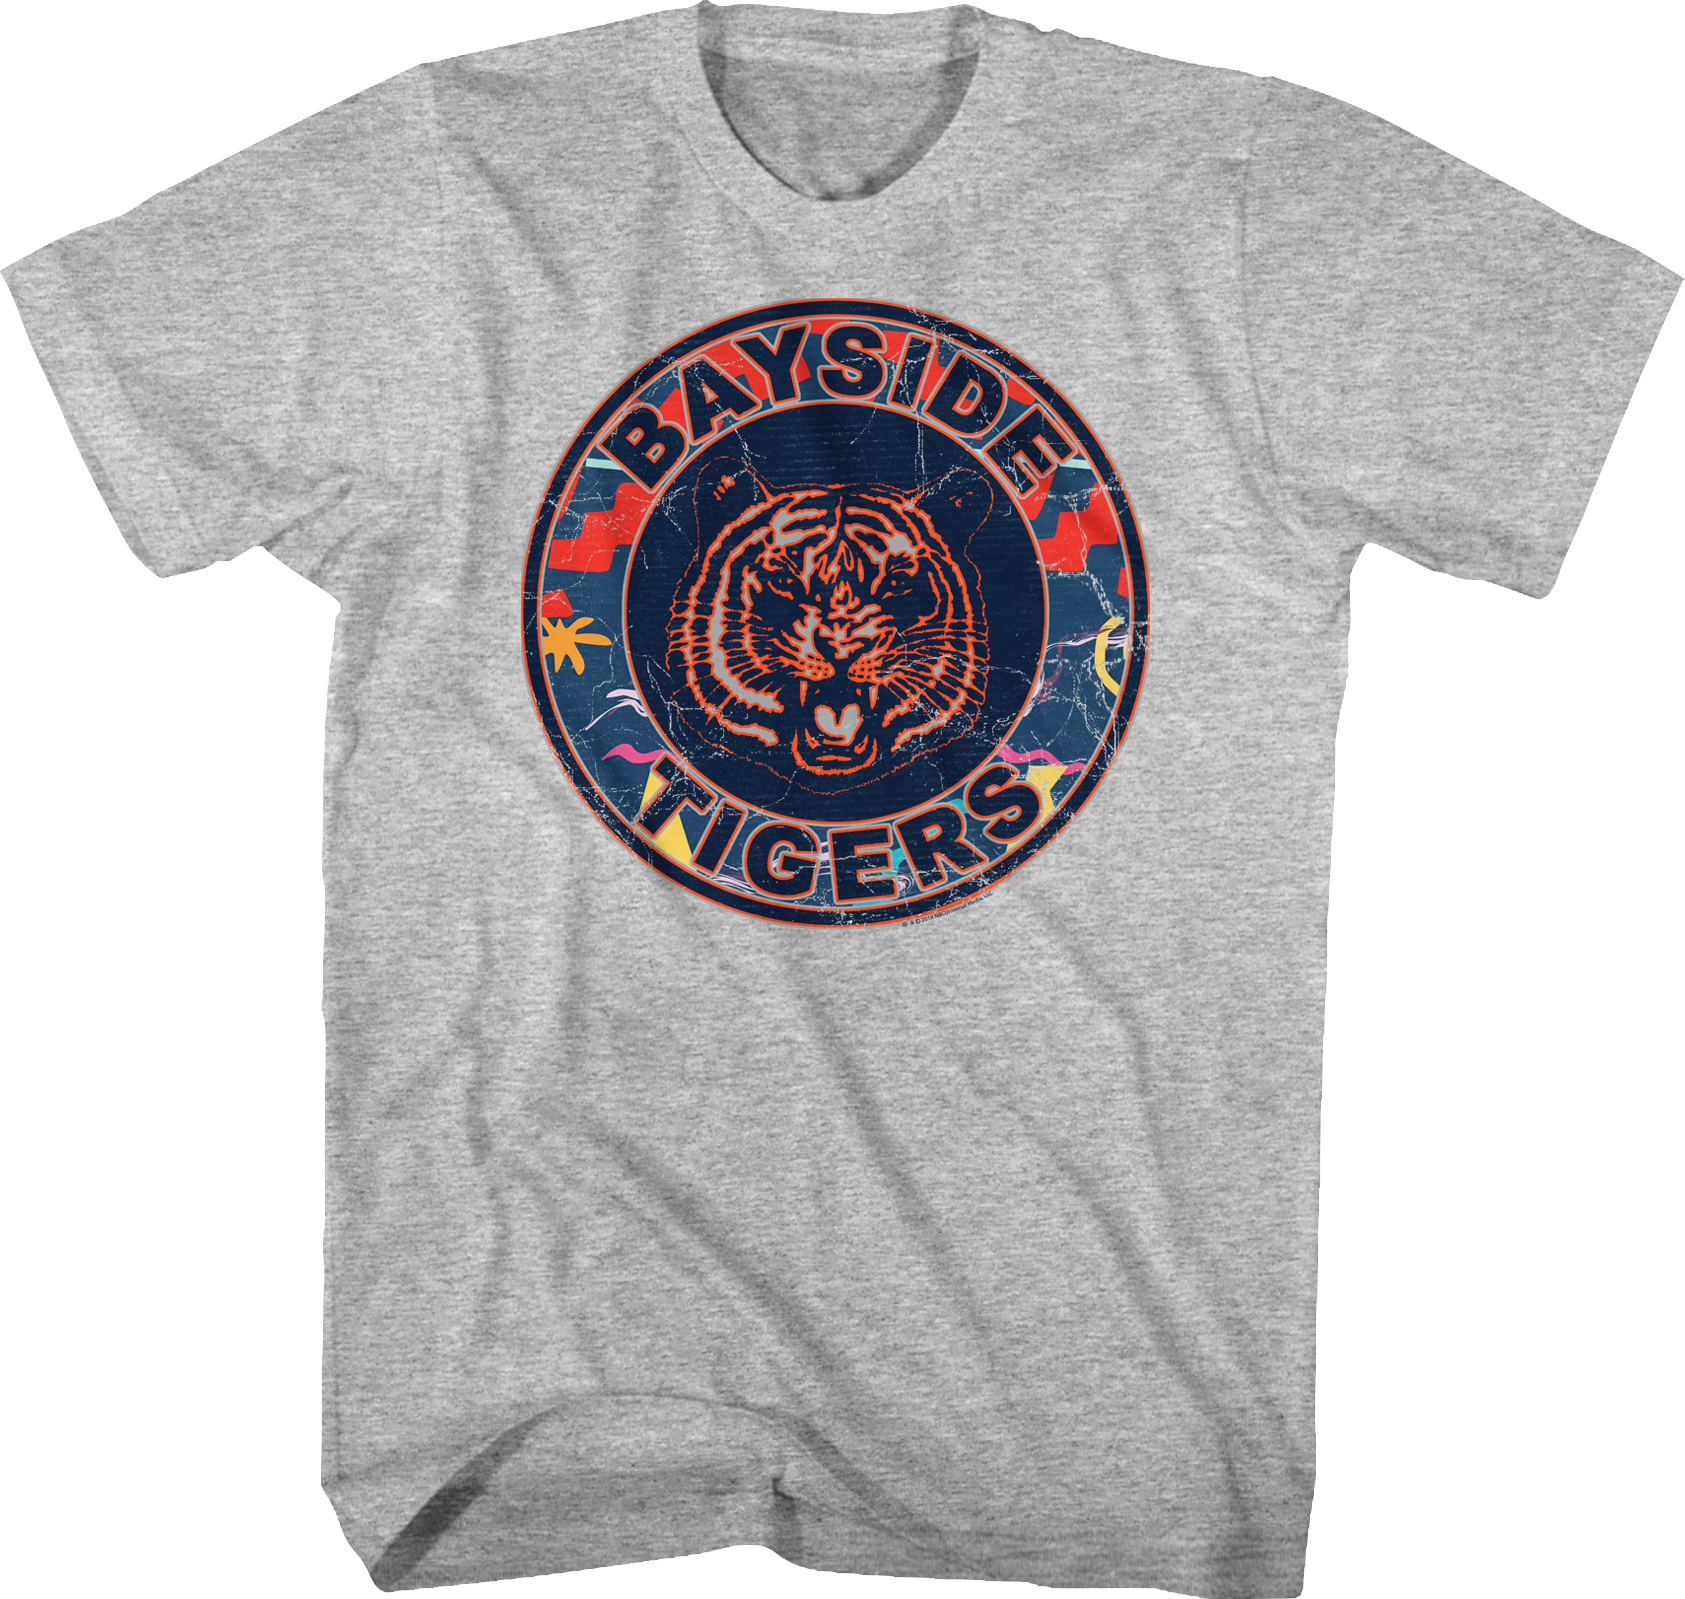 Bayside Tigers Vintage T Shirt Design PNG image